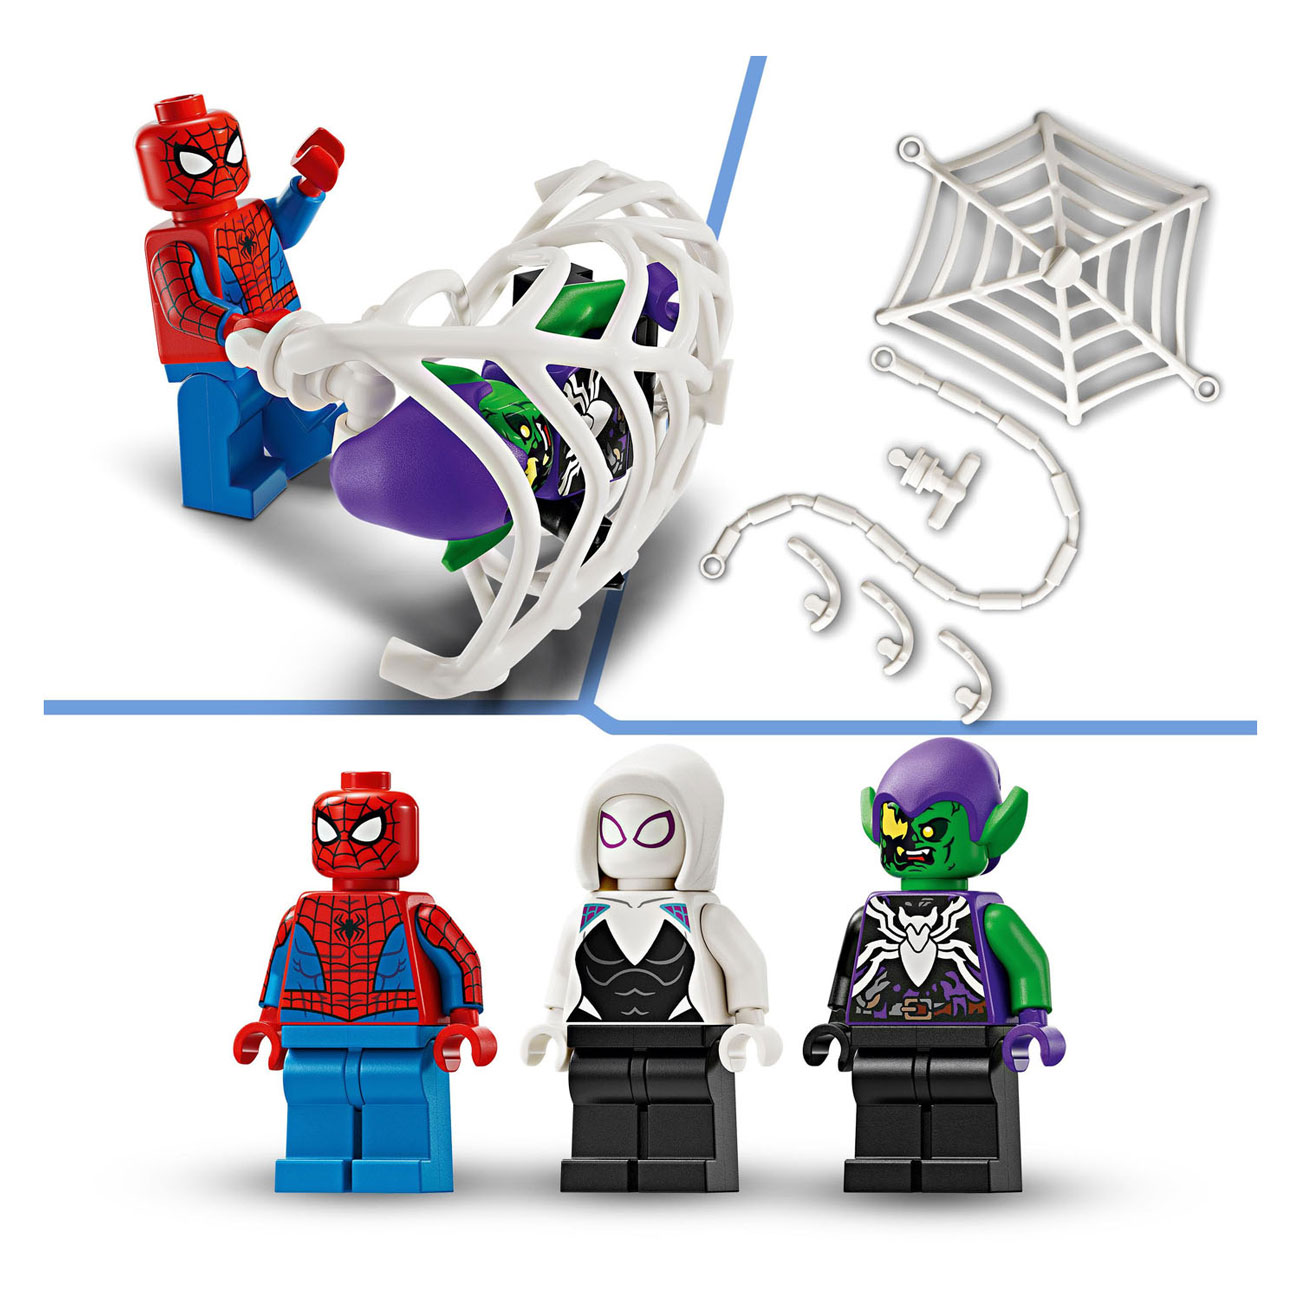 LEGO Super Heroes 76279 Spider-Man-Rennwagen und Venom Green Goblin